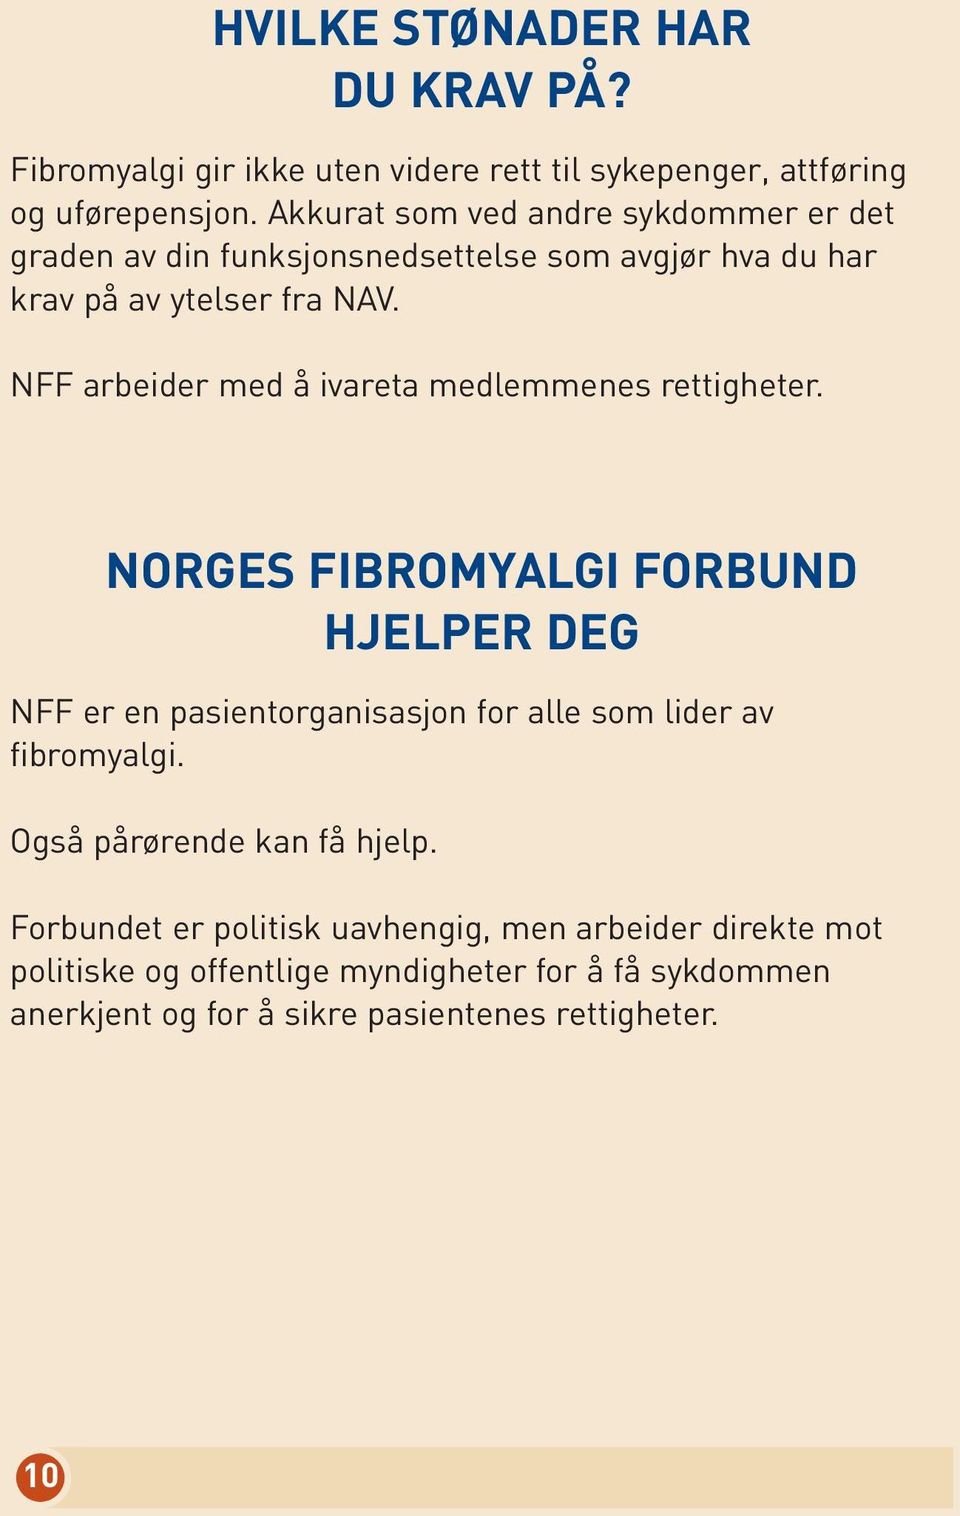 NFF arbeider med å ivareta medlemmenes rettigheter.